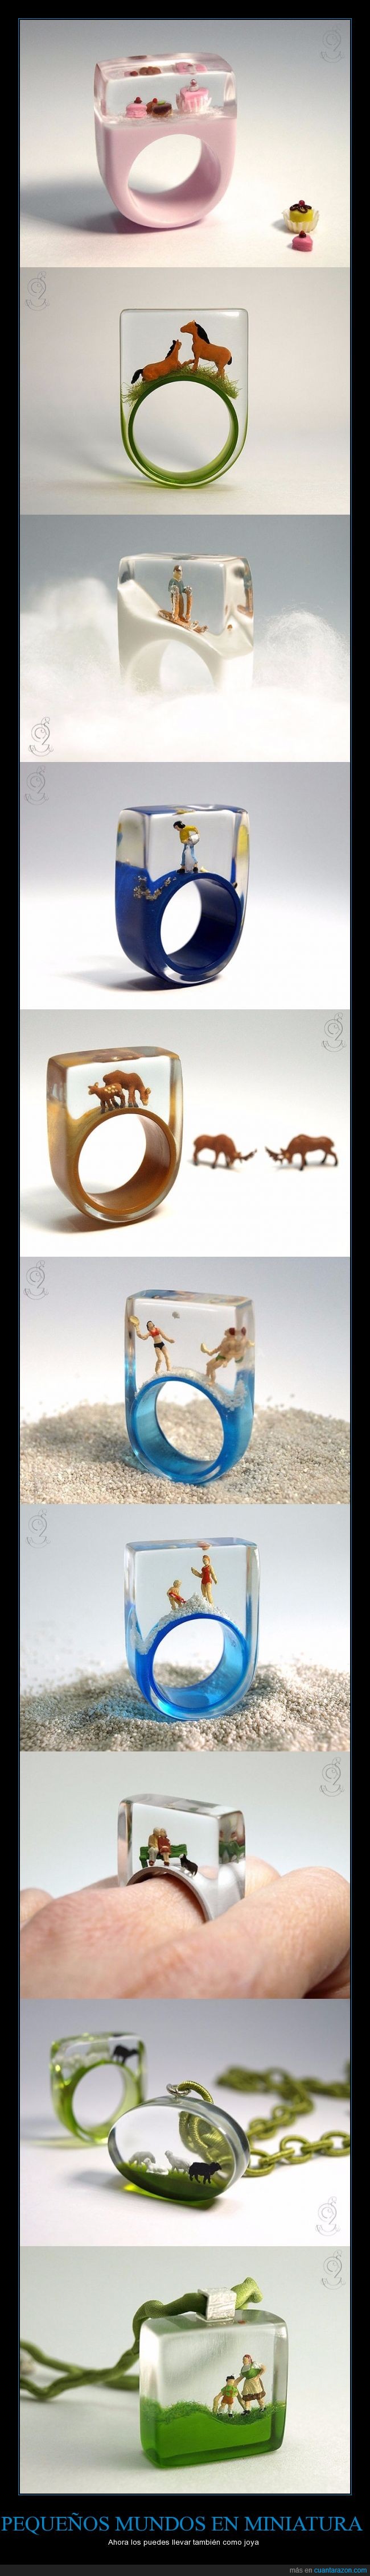 anillo,caballo,cupcake,joya,joyería,miniatura